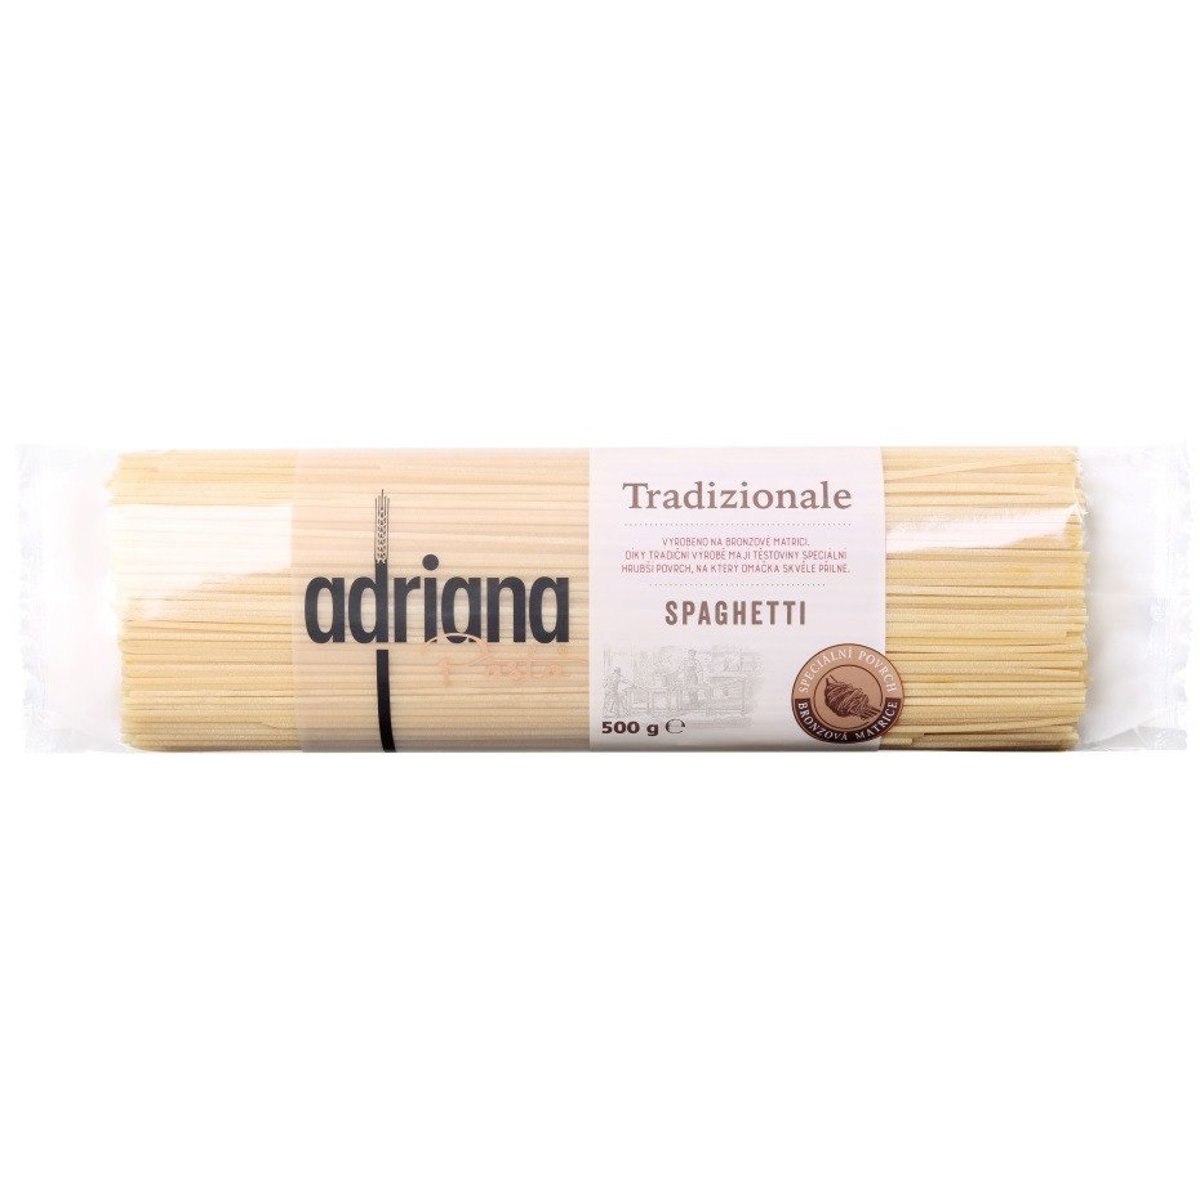 Adriana Tradizionale Spaghetti